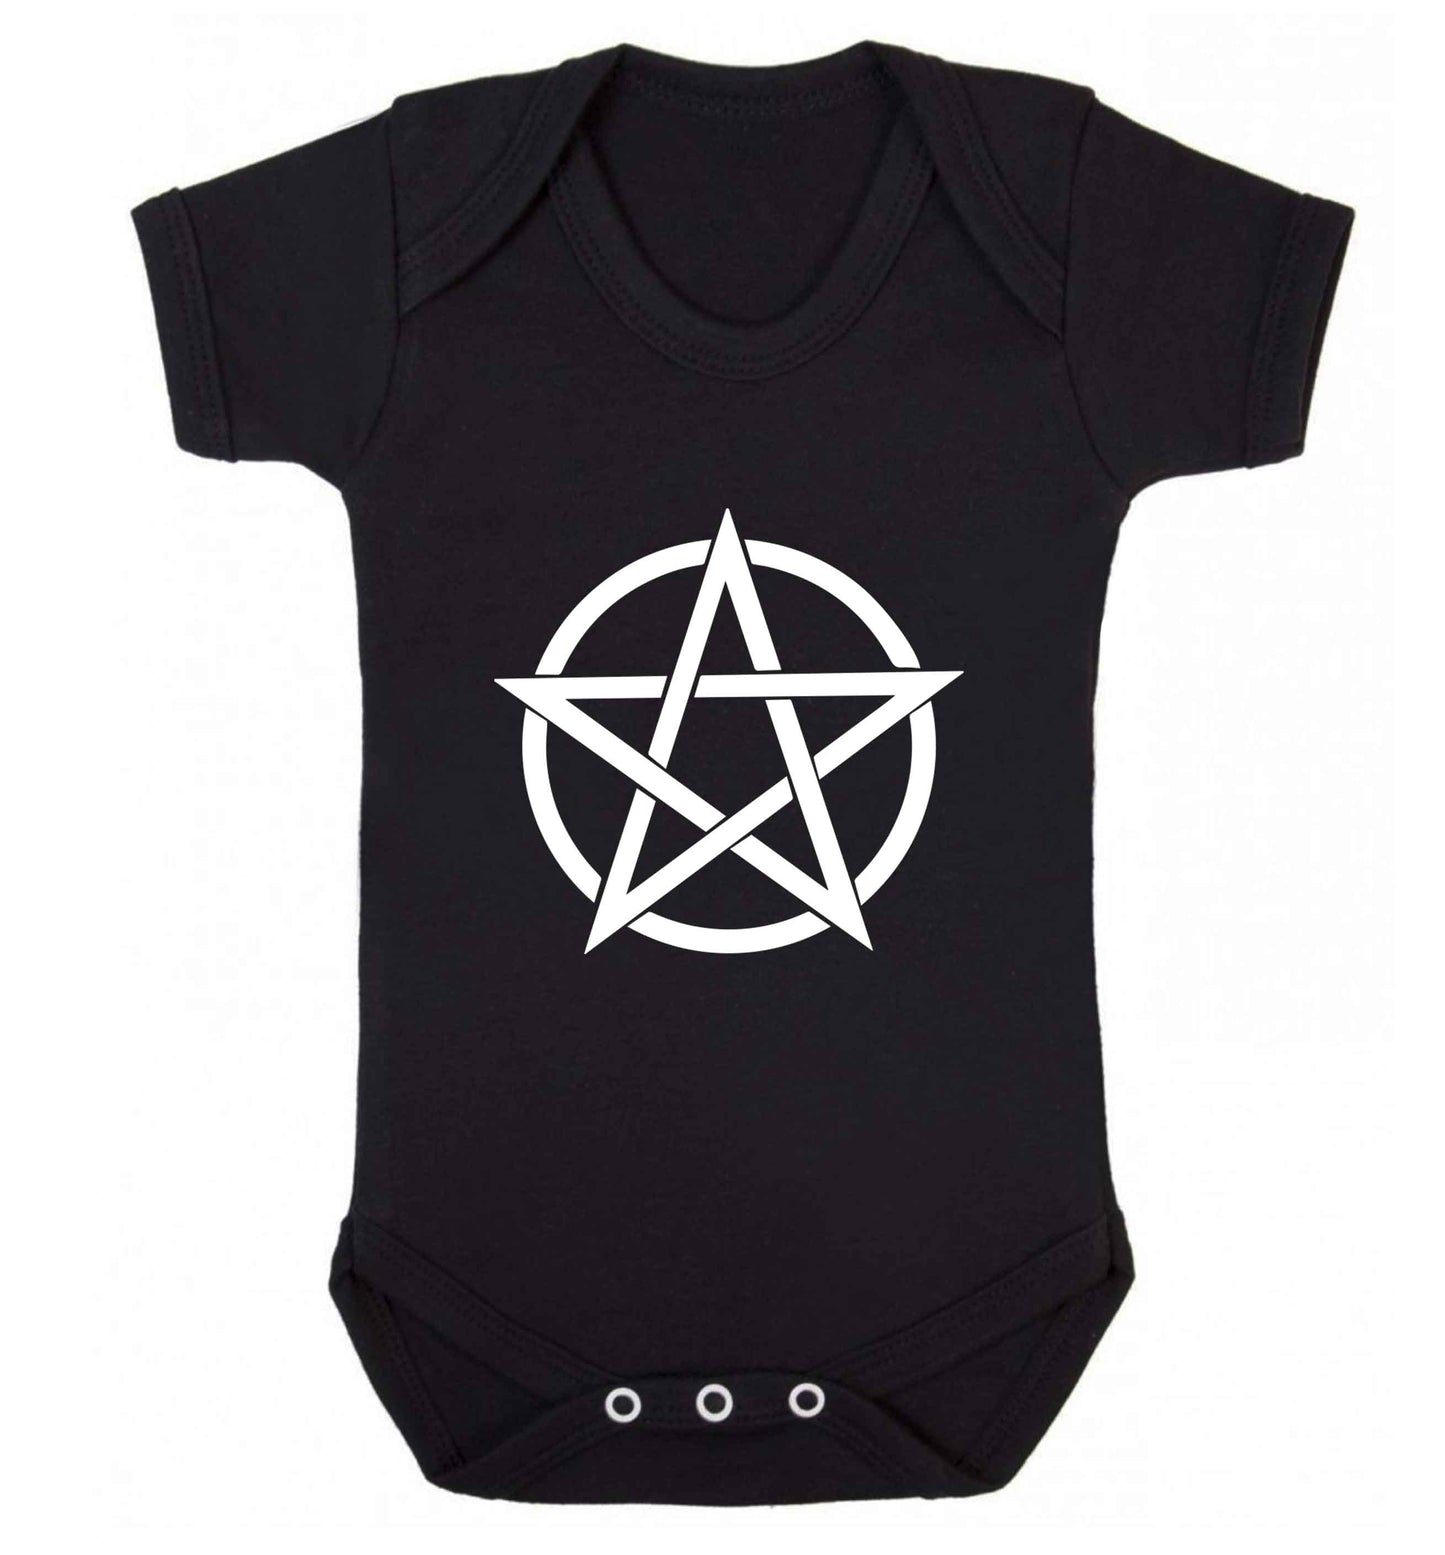 Pentagram symbol baby vest black 18-24 months